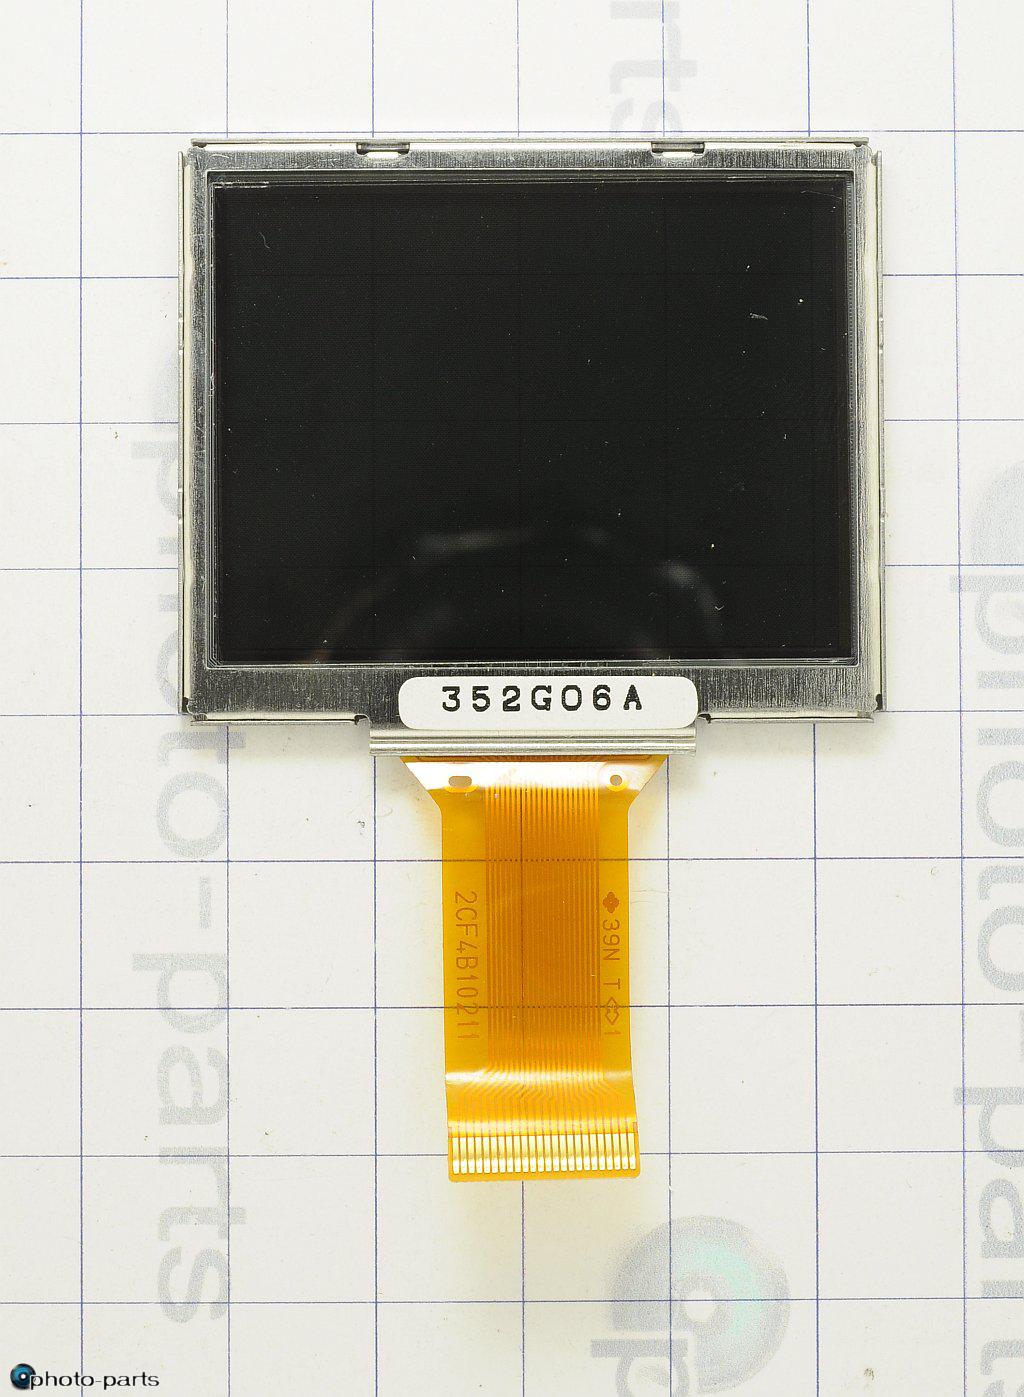 LCD 2CF4B10211 (352G06A)